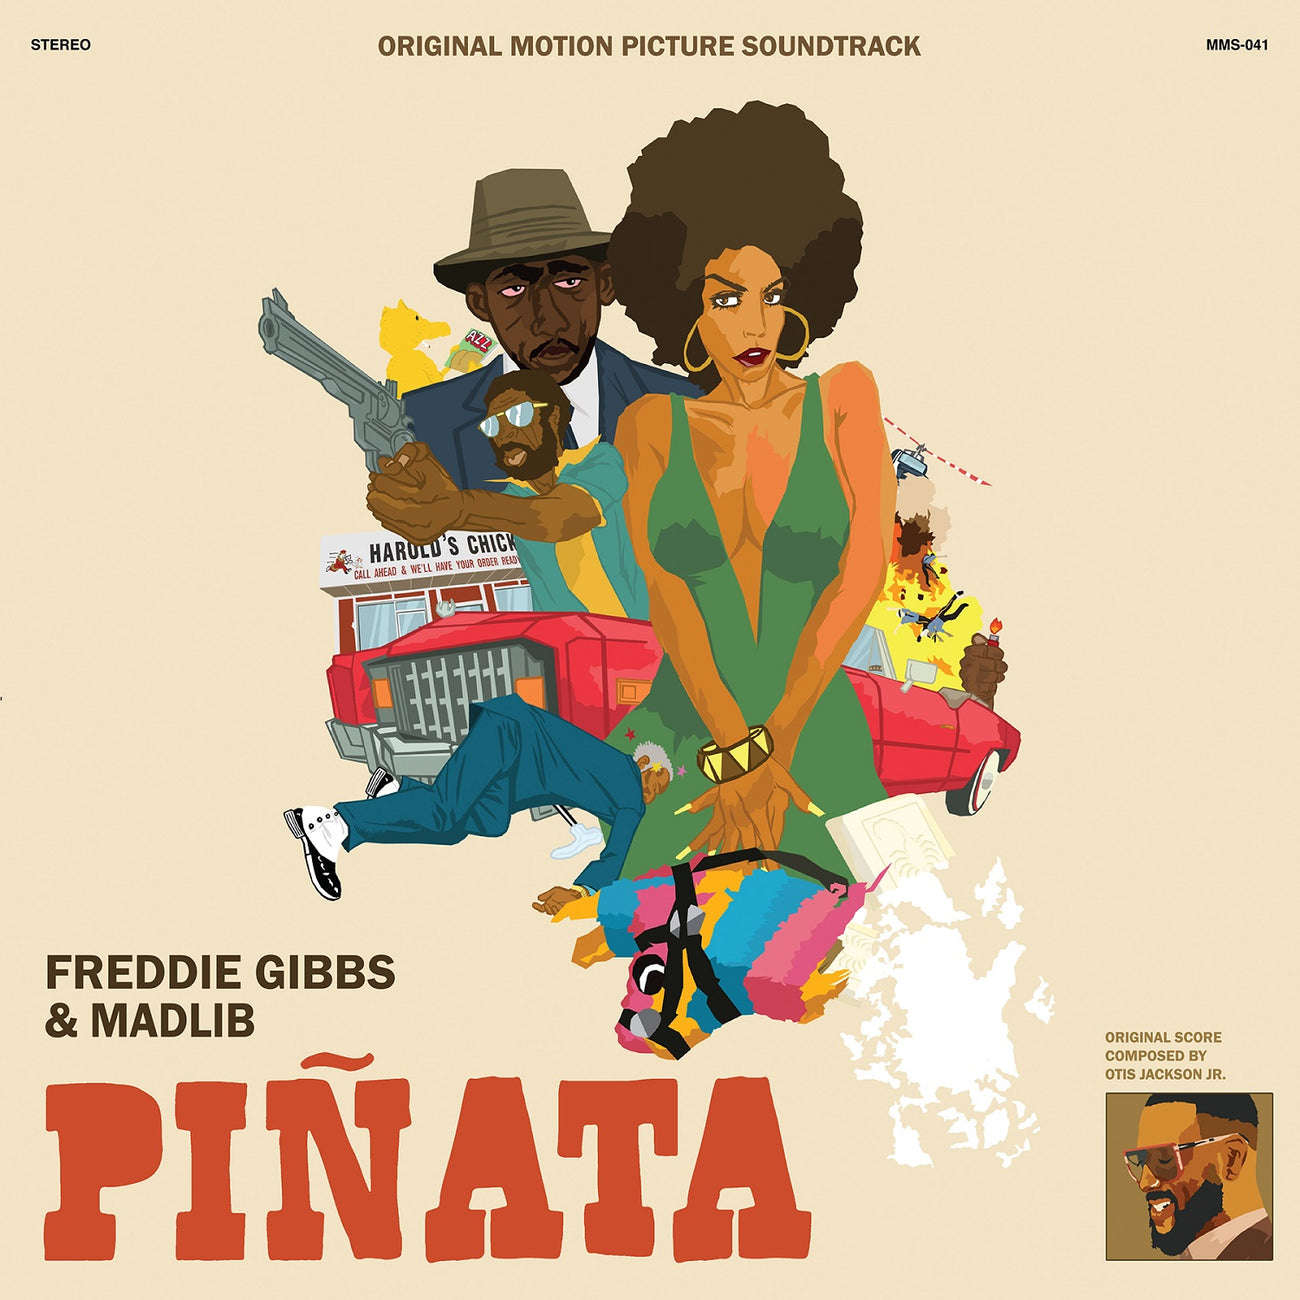 Freddie Gibbs & Madlib — Piñata (1974 Sleeve)